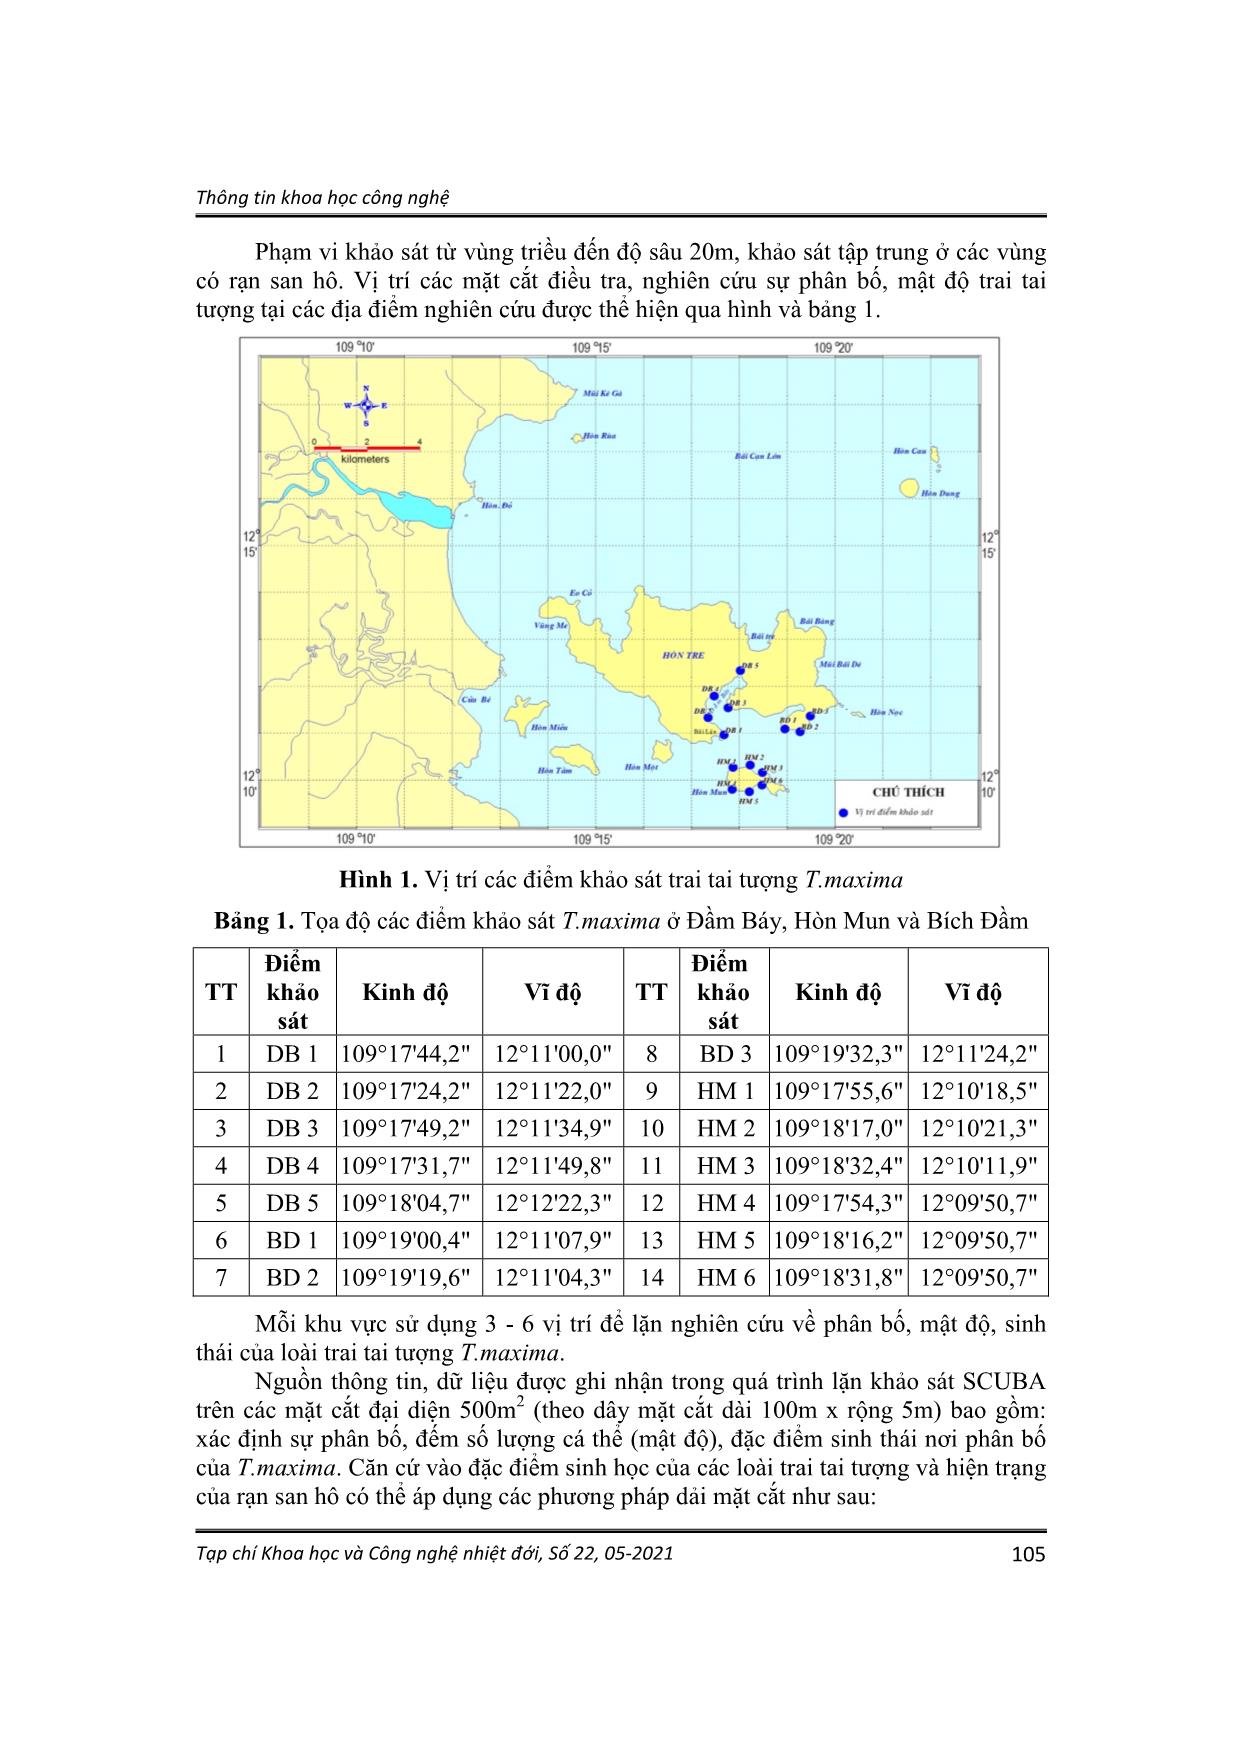 Kết quả khảo sát hiện trạng sự phân bố, mật độ trai tai tượng Tridacna maxima ở vịnh Nha Trang, Khánh Hòa trang 3